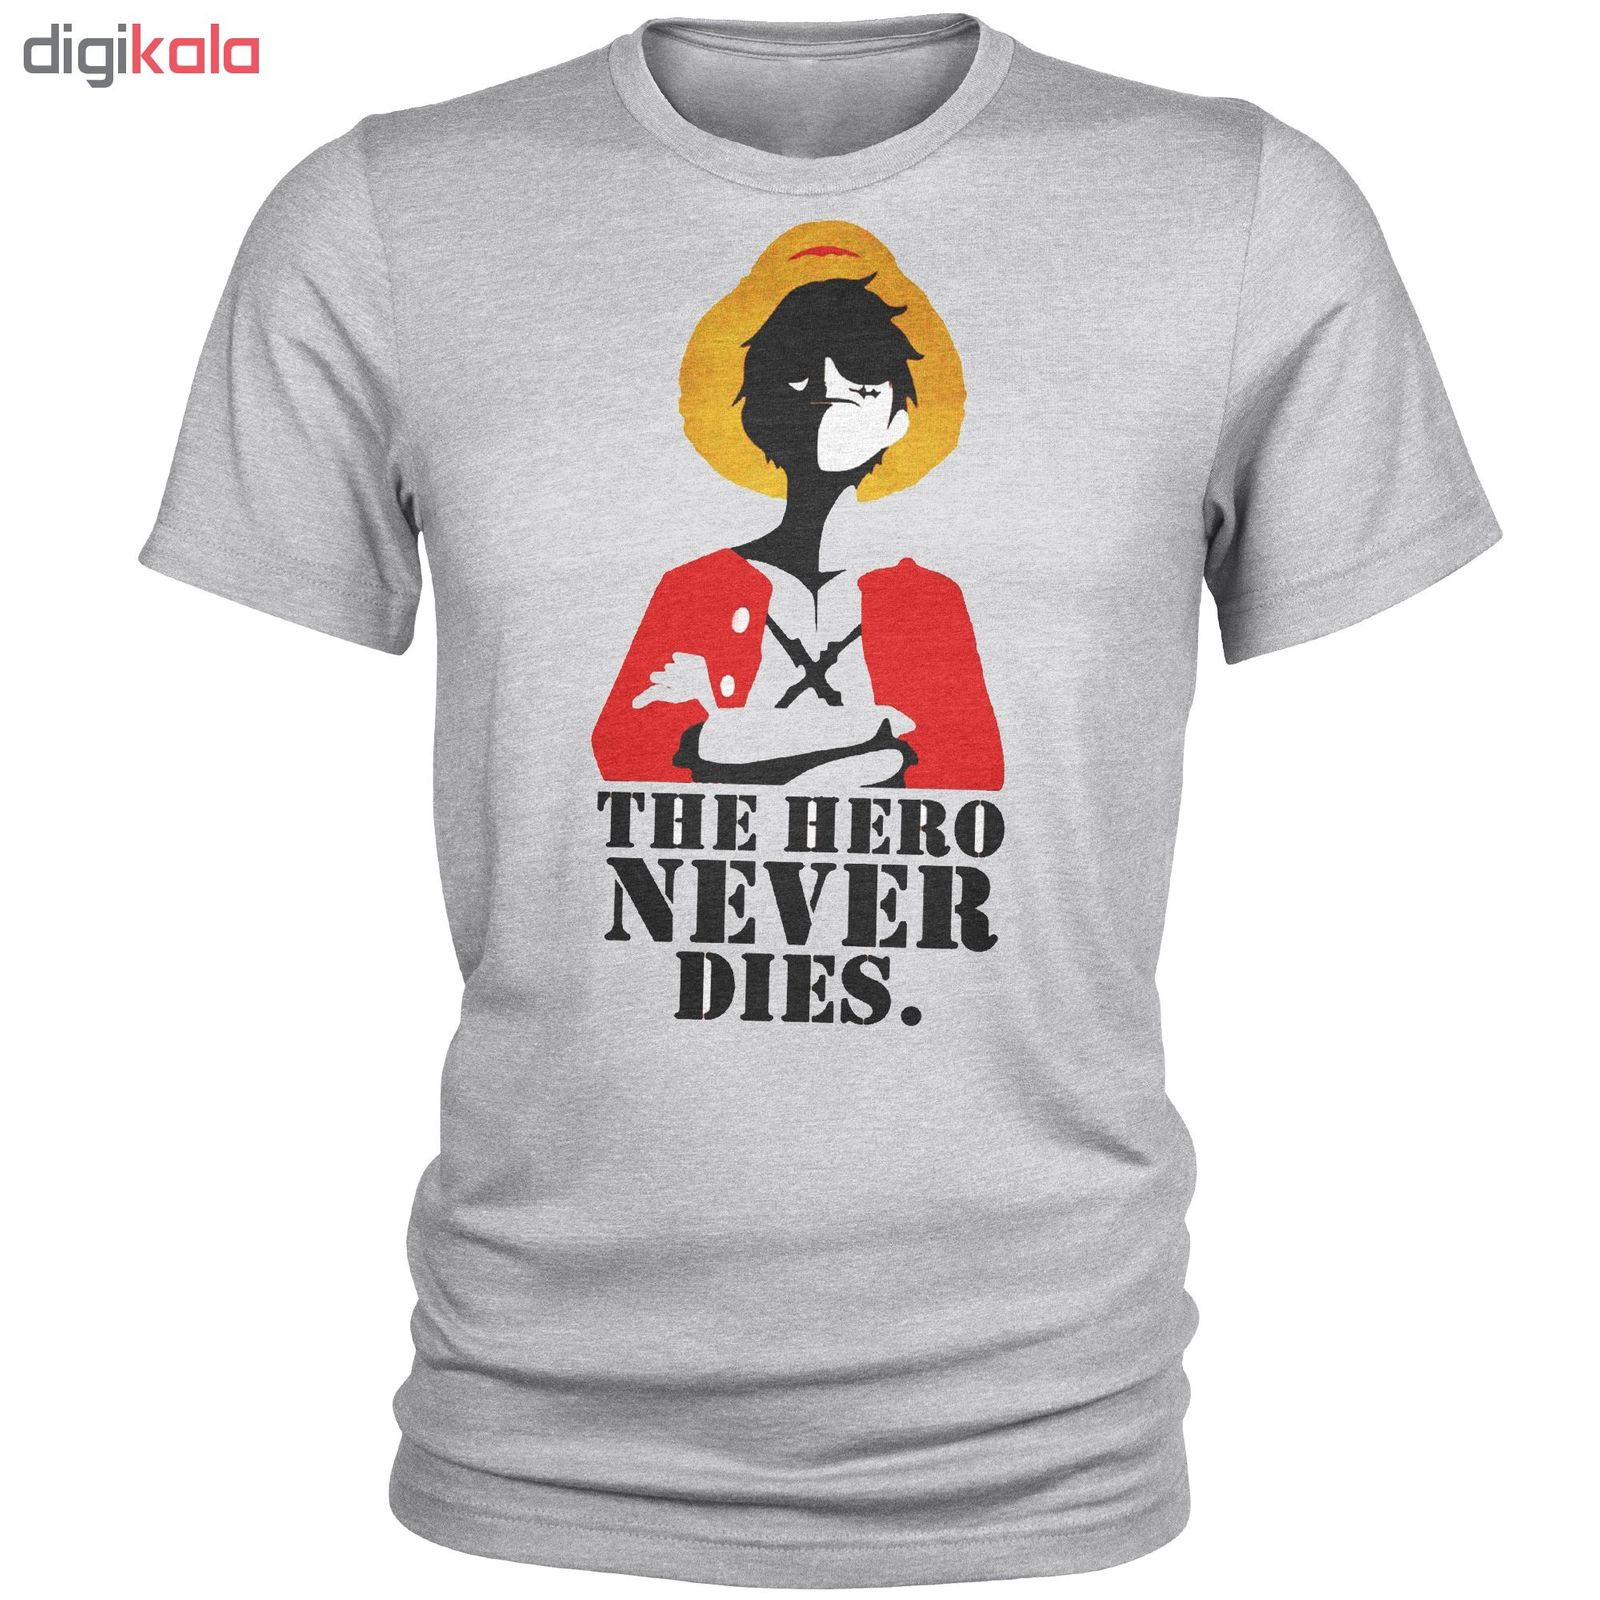 تی شرت مردانه مدل hero کد B37